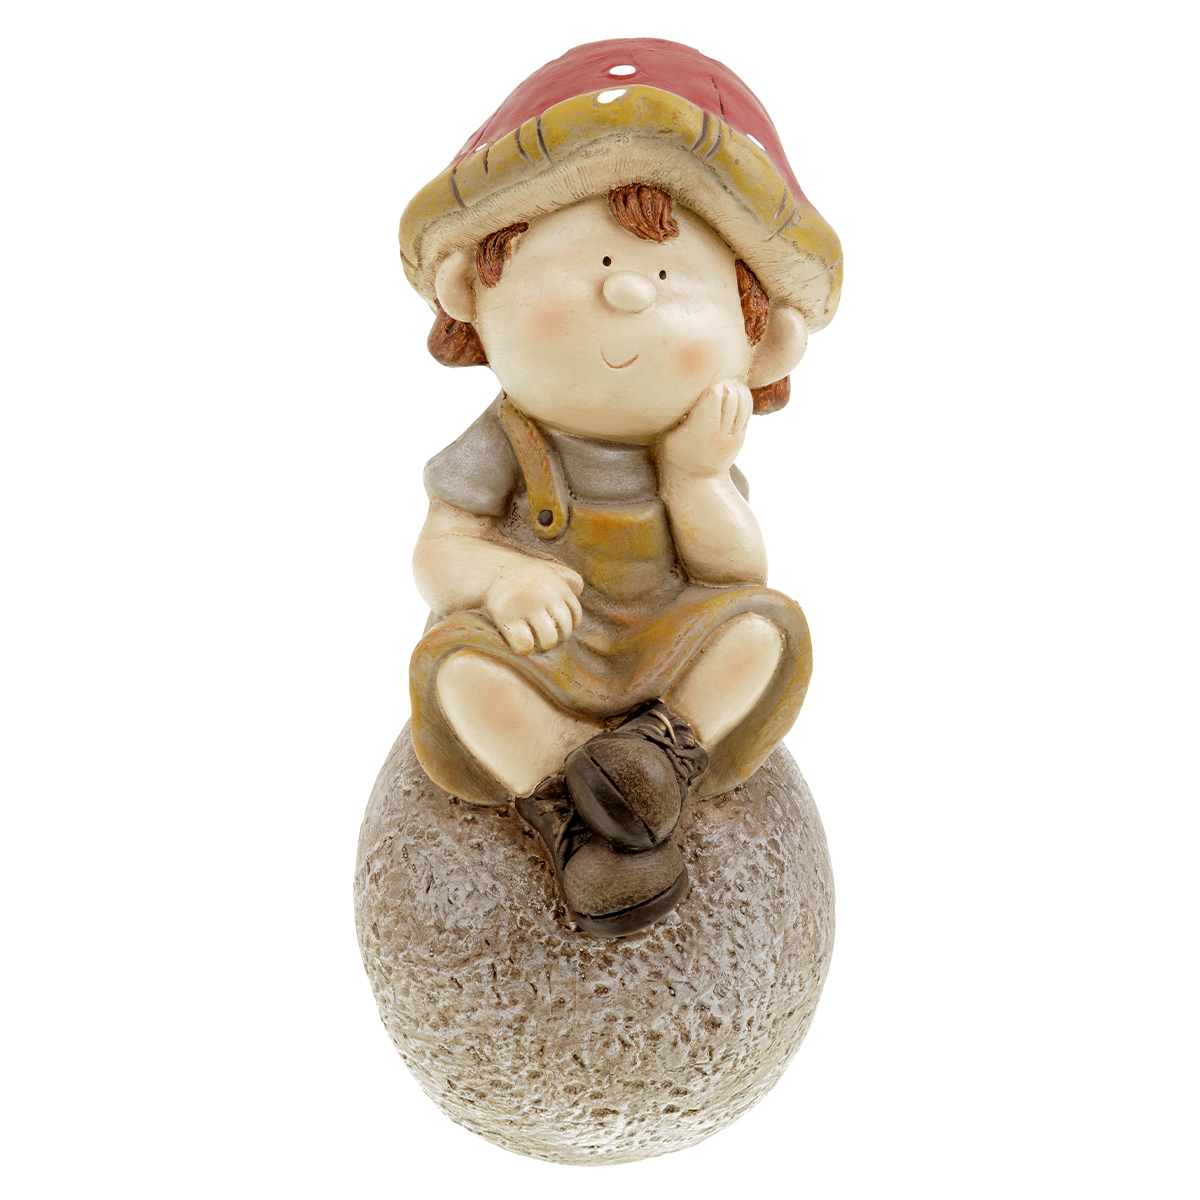 Houbový chlapec na kameni zahradní MgO keramika